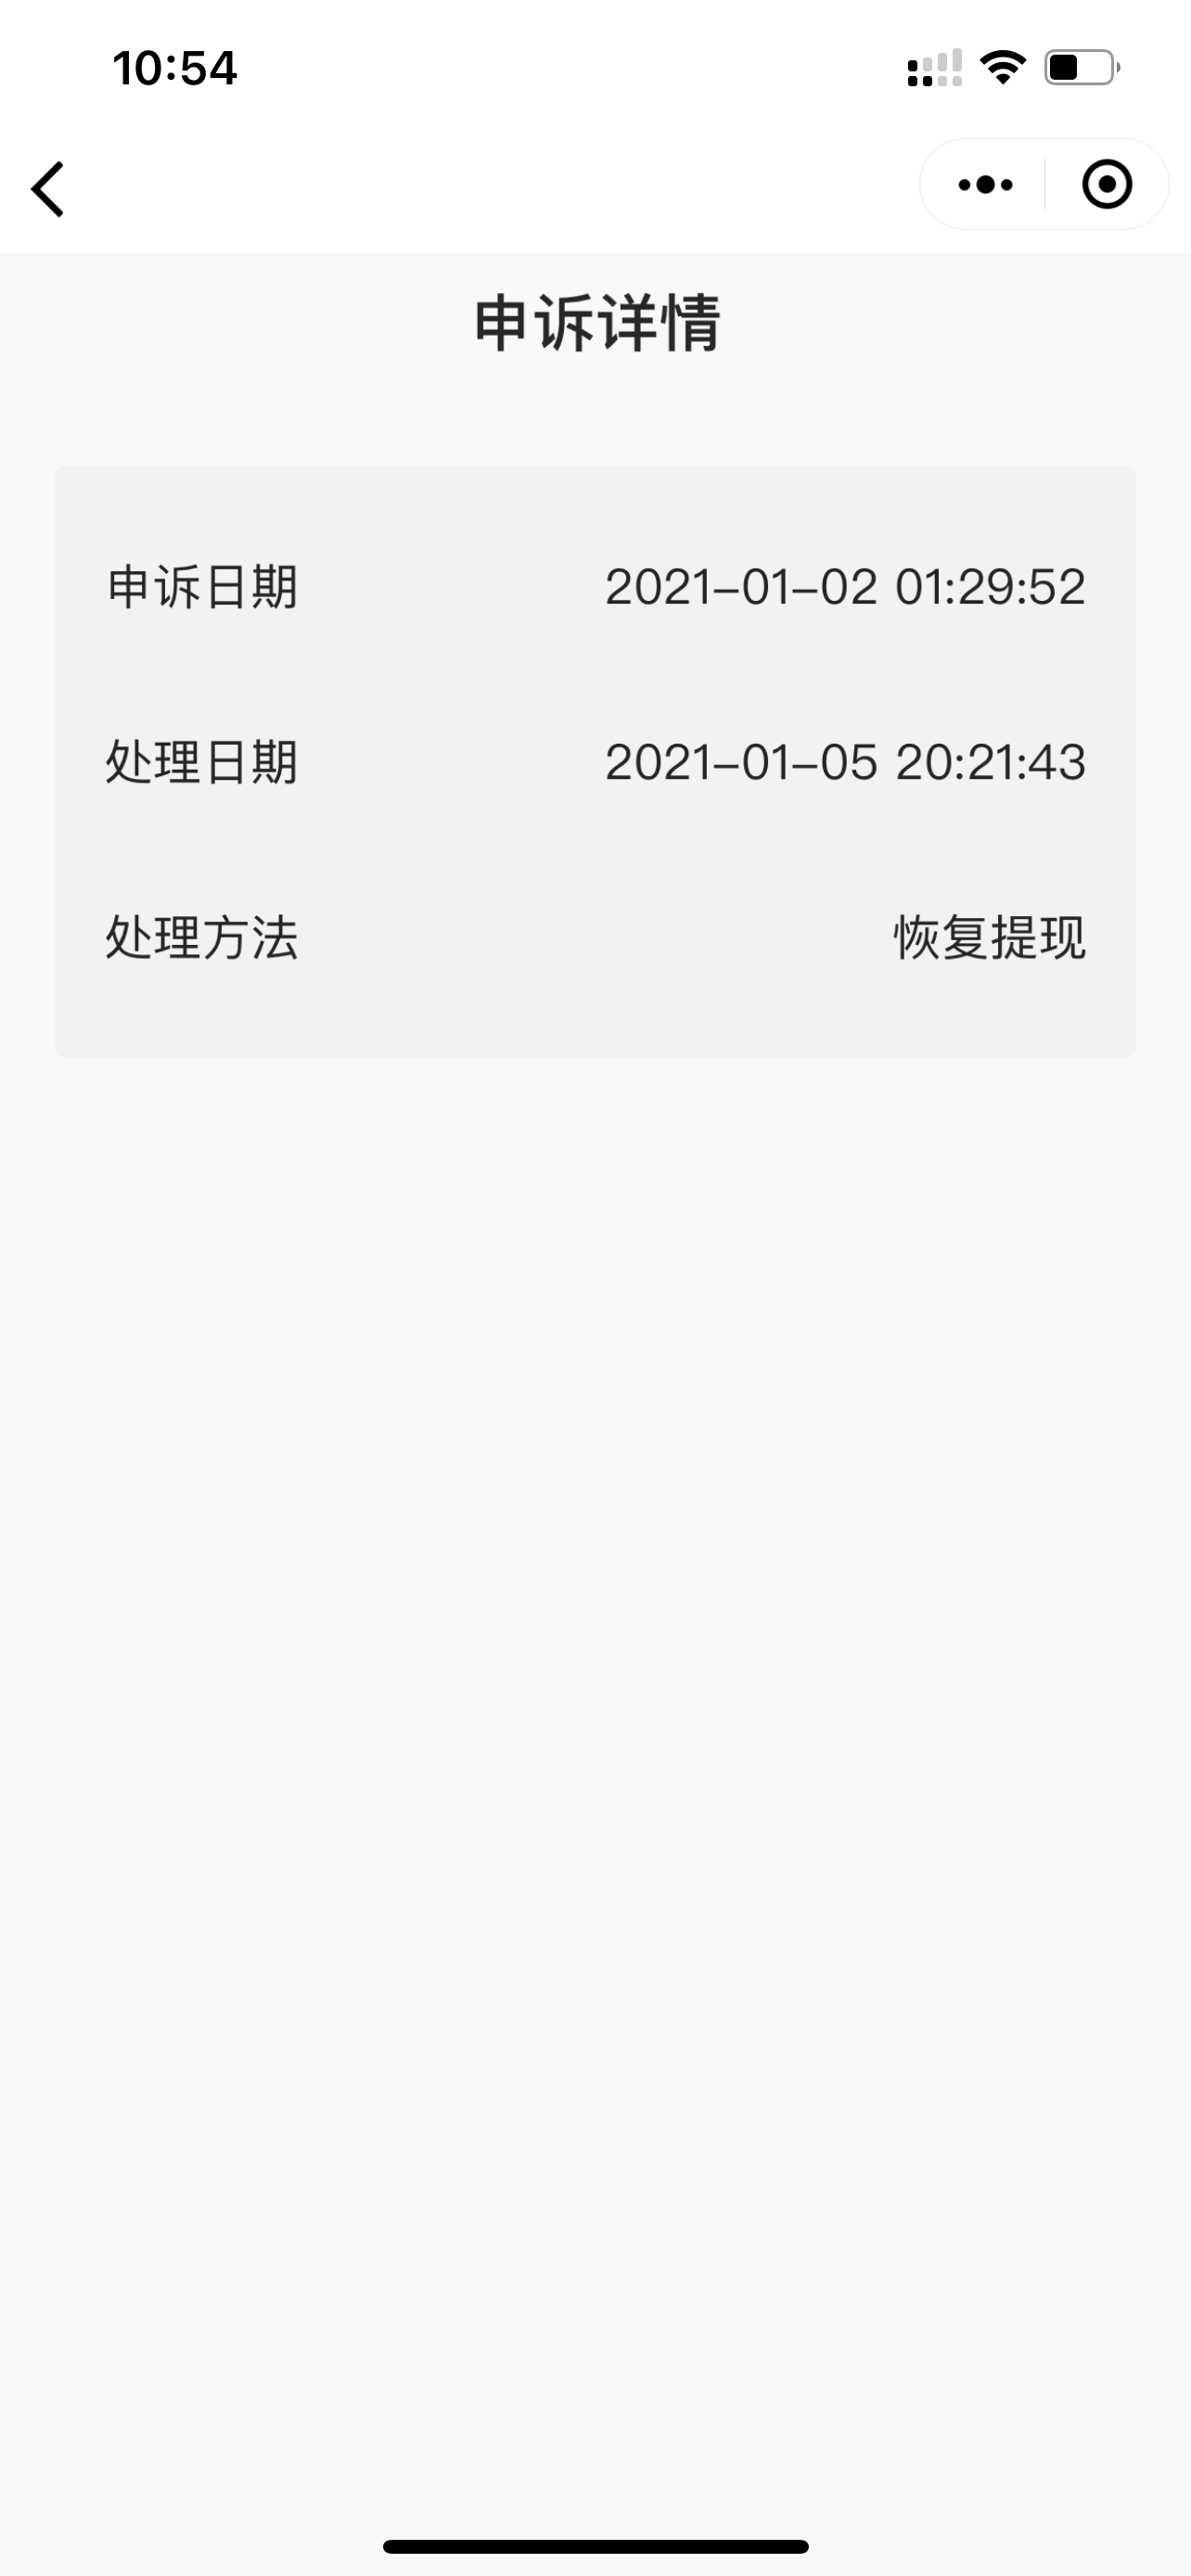 微信商户延迟结算提交申诉资料